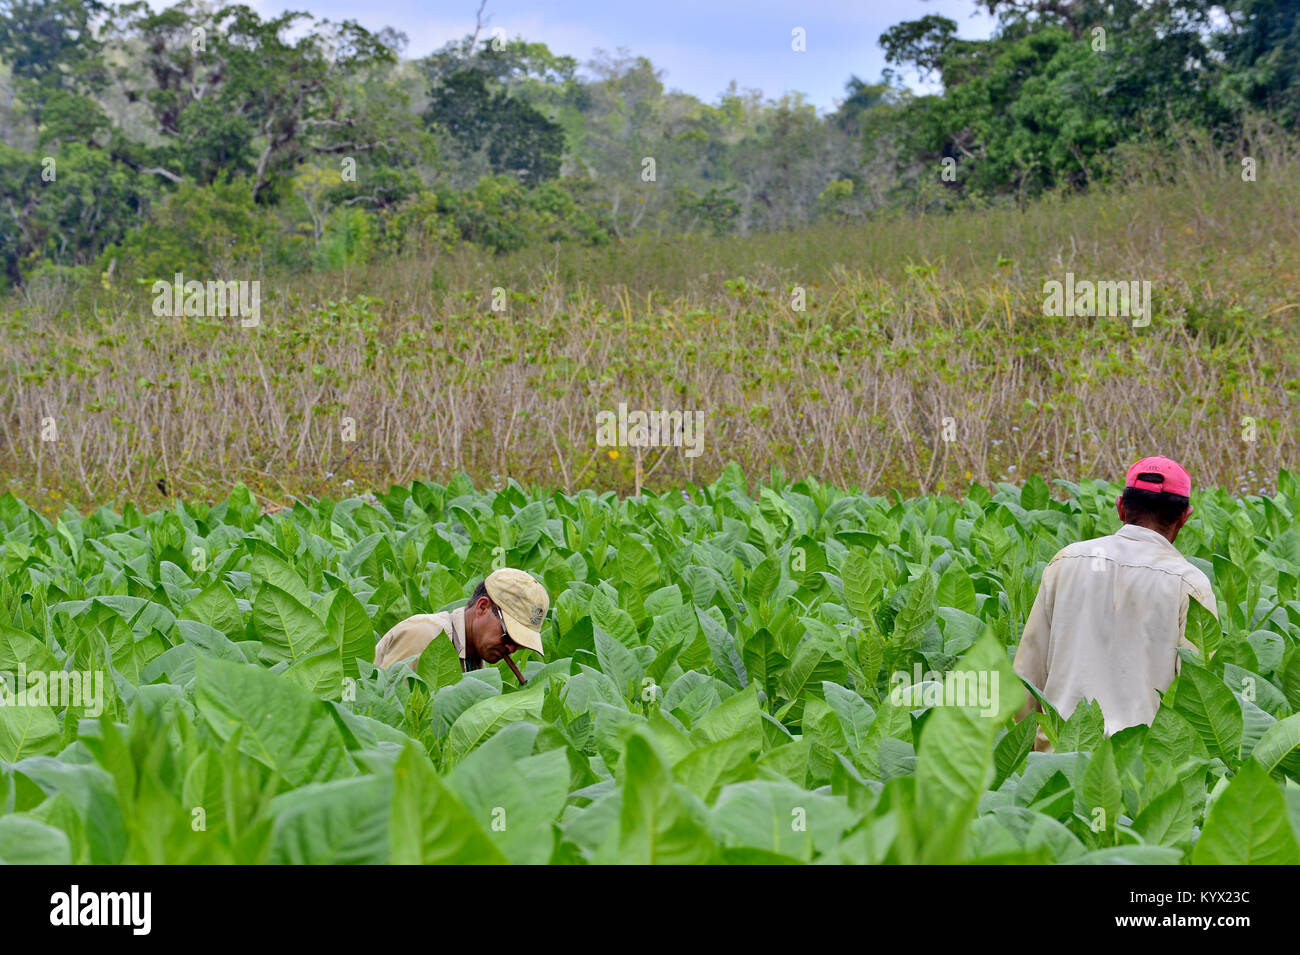 Valle de Viñales, Cuba - 17 de febrero: un grupo de hombres no identificados trabajando en Cuba una plantación de tabaco.técnicas tradicionales están todavía en uso agrícola para la pro Foto de stock